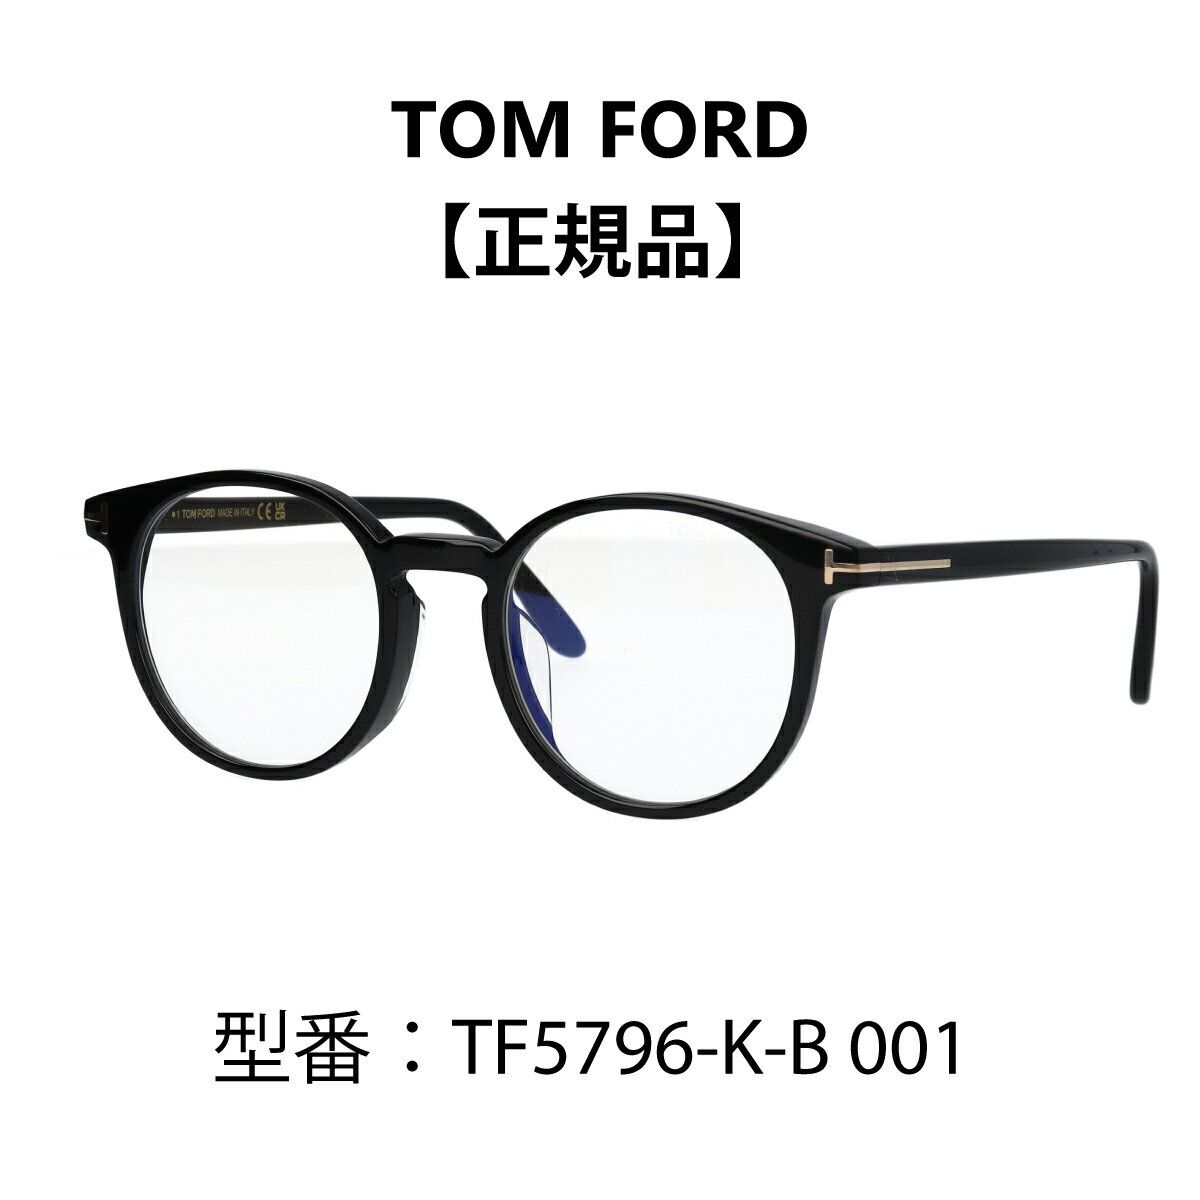 トム・フォード メガネ レディース TOM FORD ボストン トムフォード メガネ 眼鏡 黒縁 メガネ ブルーライトカットメガネ FT5796-K-B/V 001 (TF5796-K-B 001) アジアンフィット【海外正規品】